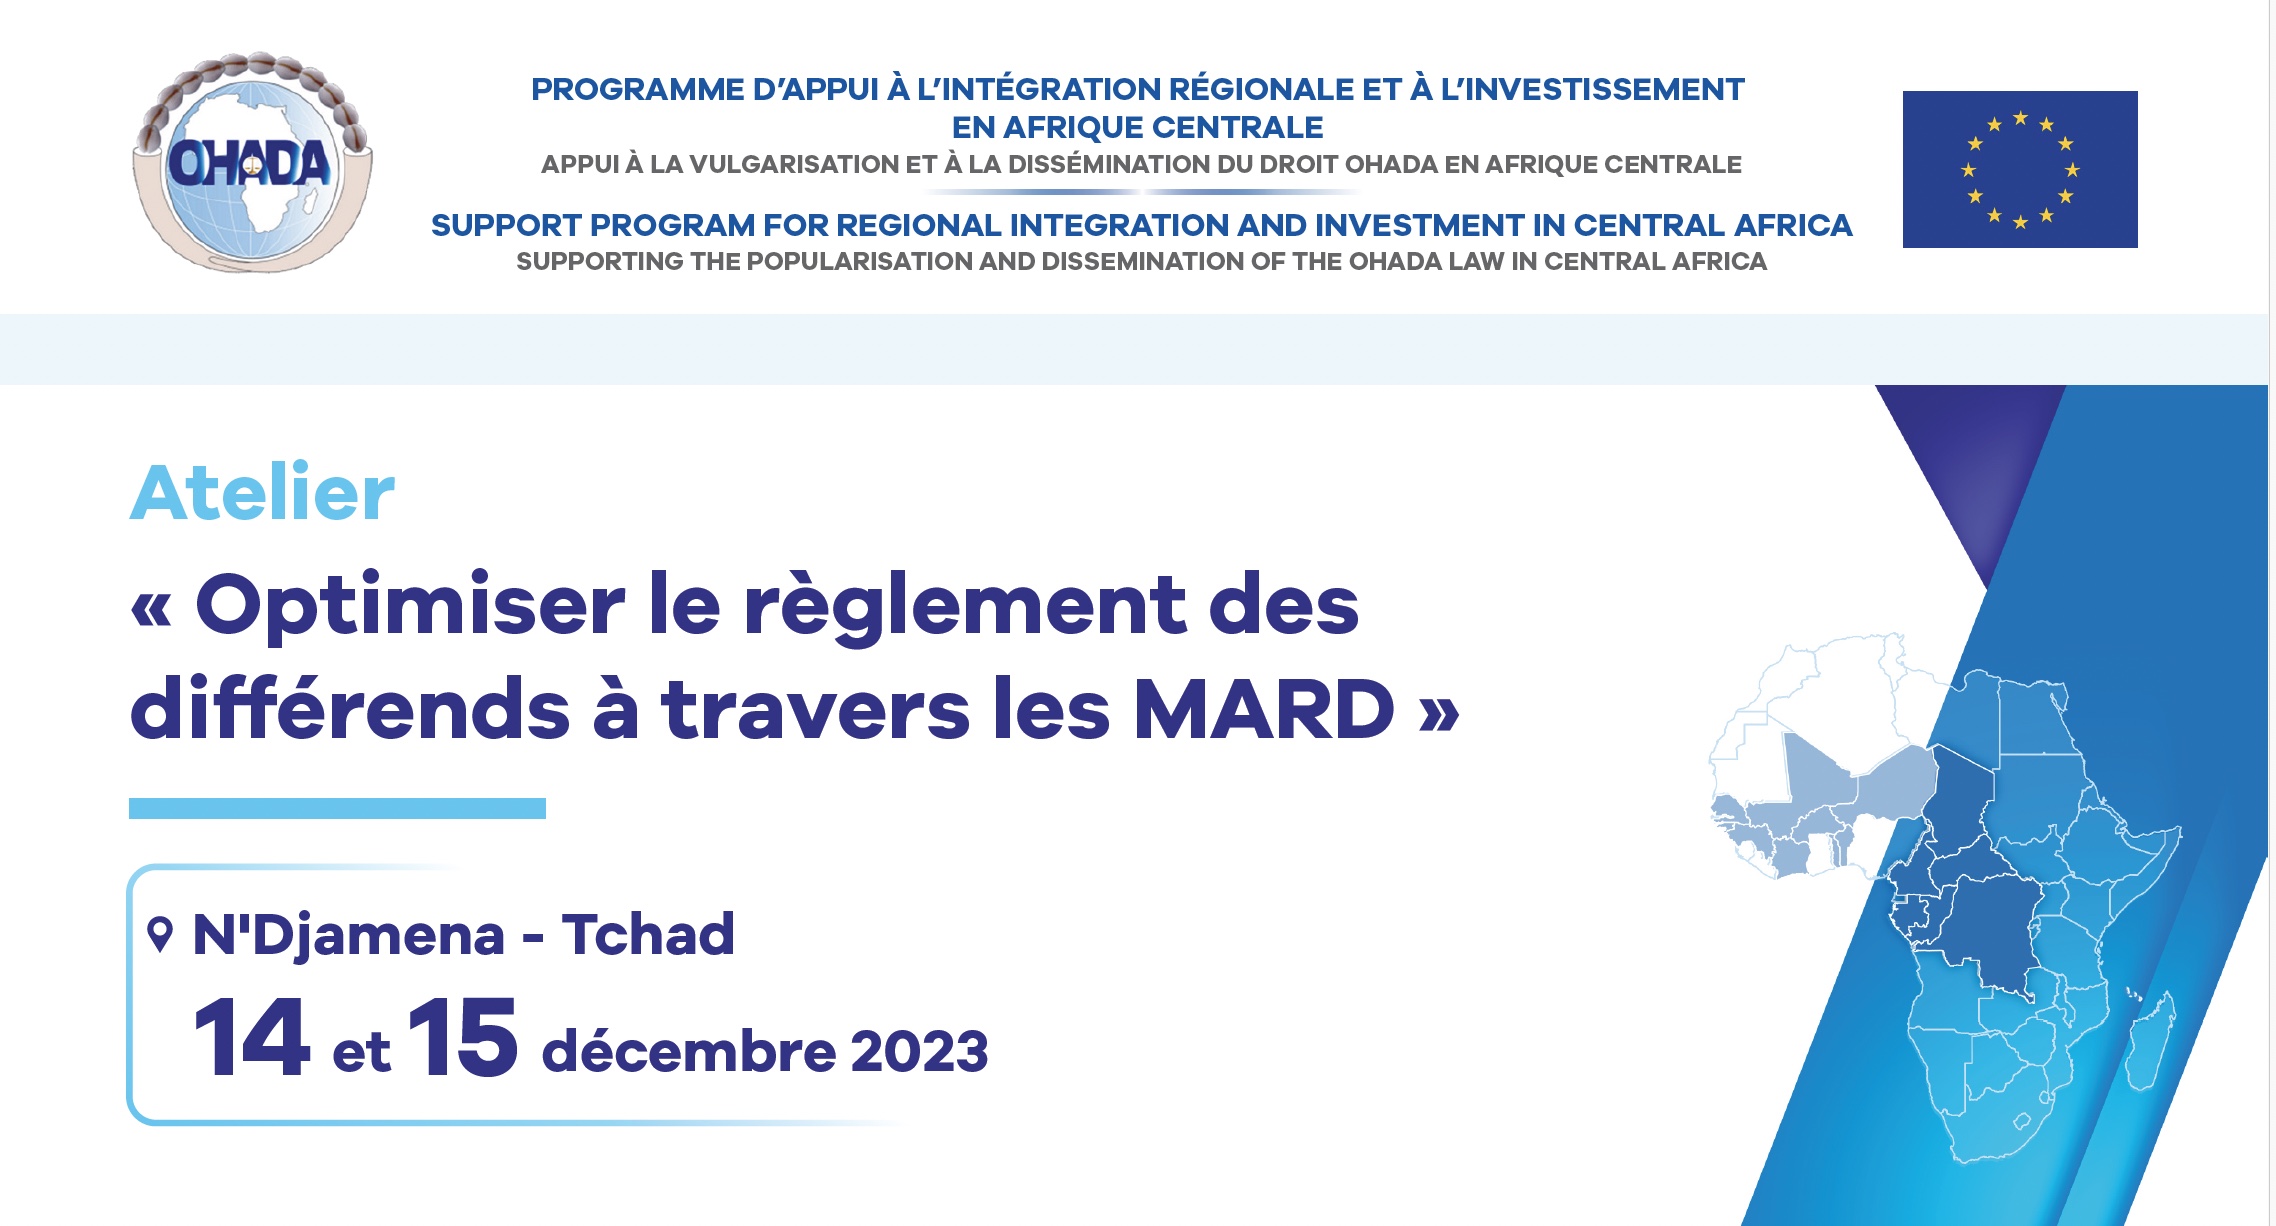 Atelier de vulgarisation des modes alternatifs de règlement des différends (MARD) à N’Djaména au Tchad et par visioconférence